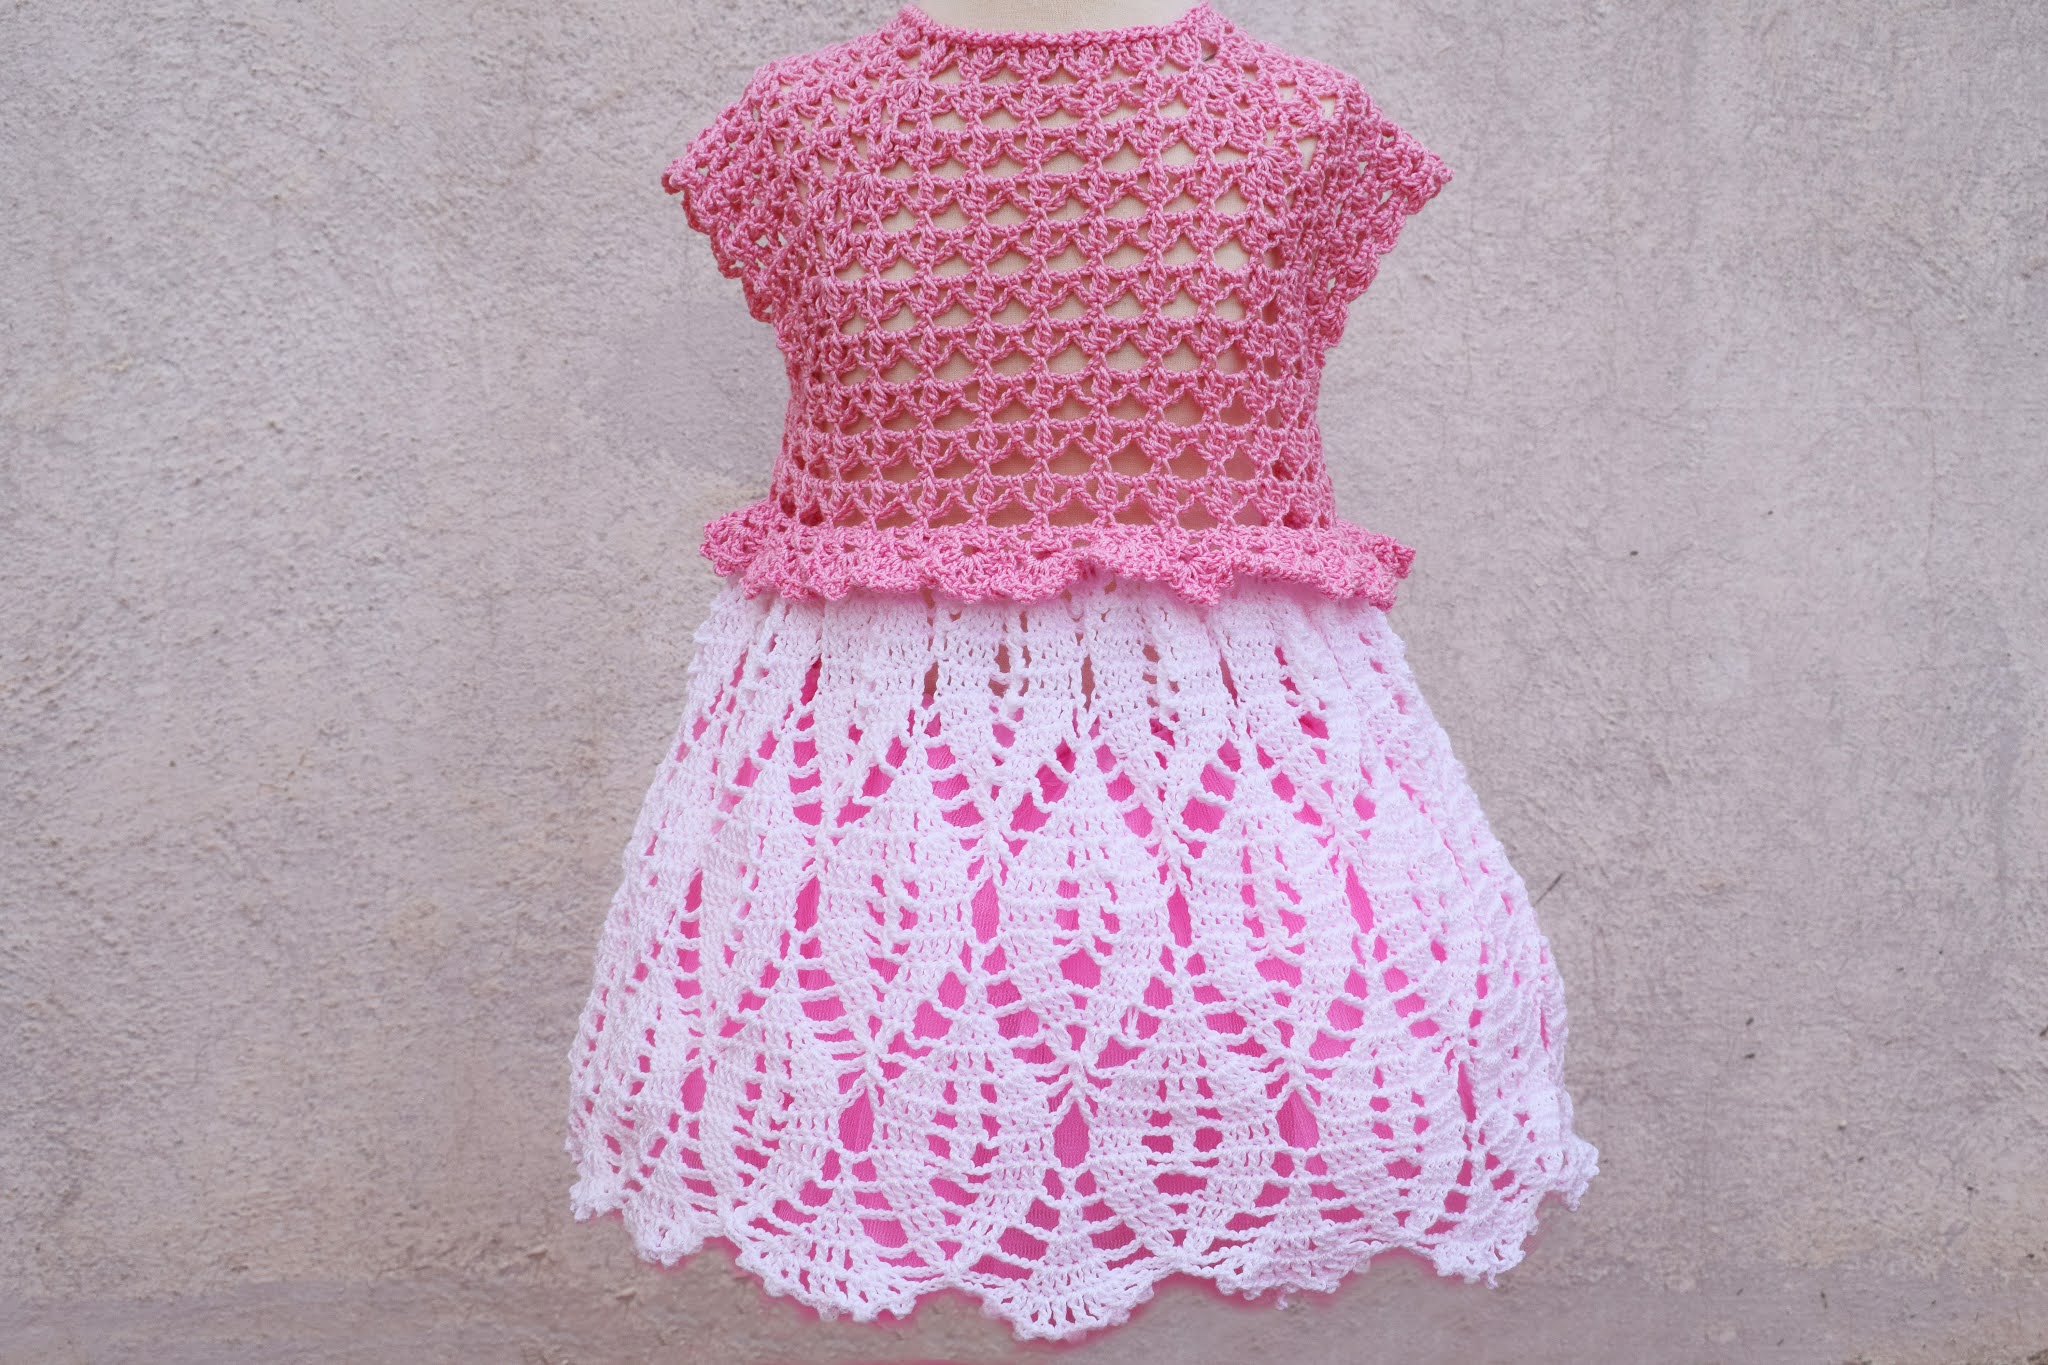 Lindo y sencillo vestido a crochet de verano - Patrones Crochet Majovel